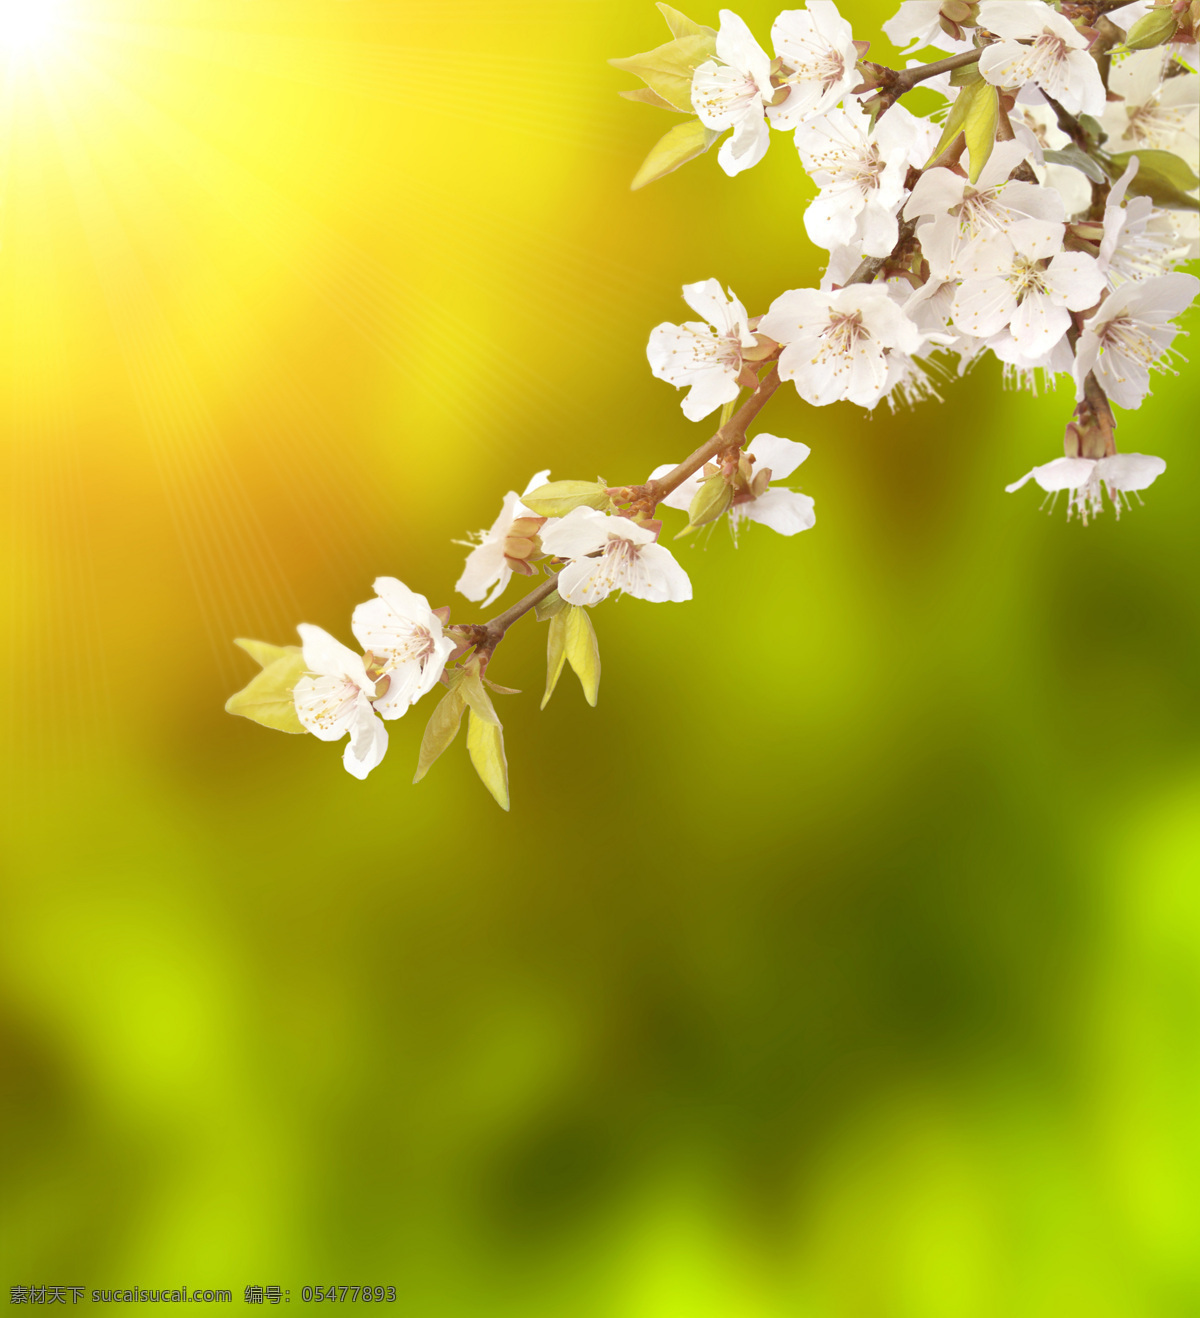 春天 桃花 实用 背景 春天背景 实用背景 背景素材 绿色背景 花 花朵 树枝 高清图片 山水风景 风景图片